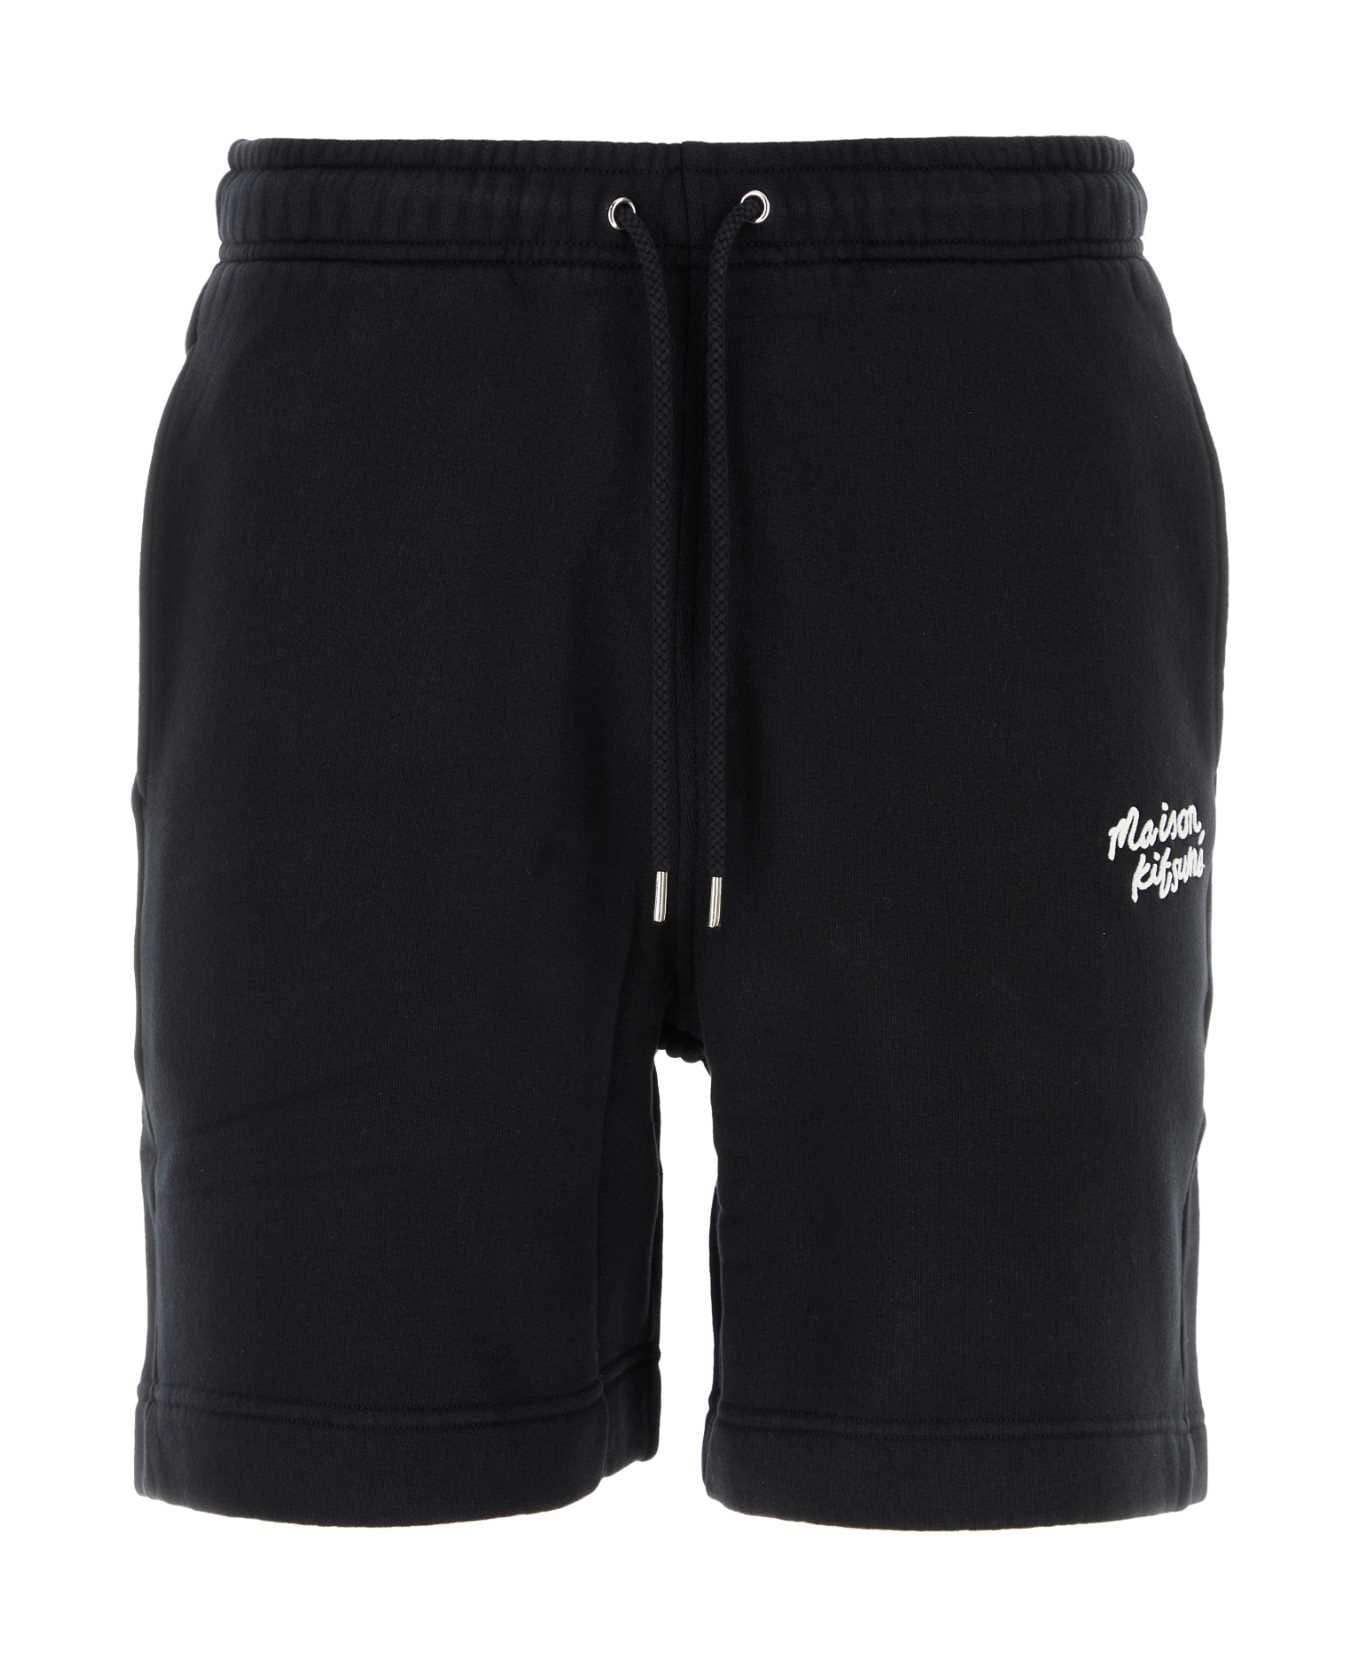 Maison Kitsuné Black Cotton Bermuda Shorts - BLACKWHITE ショートパンツ